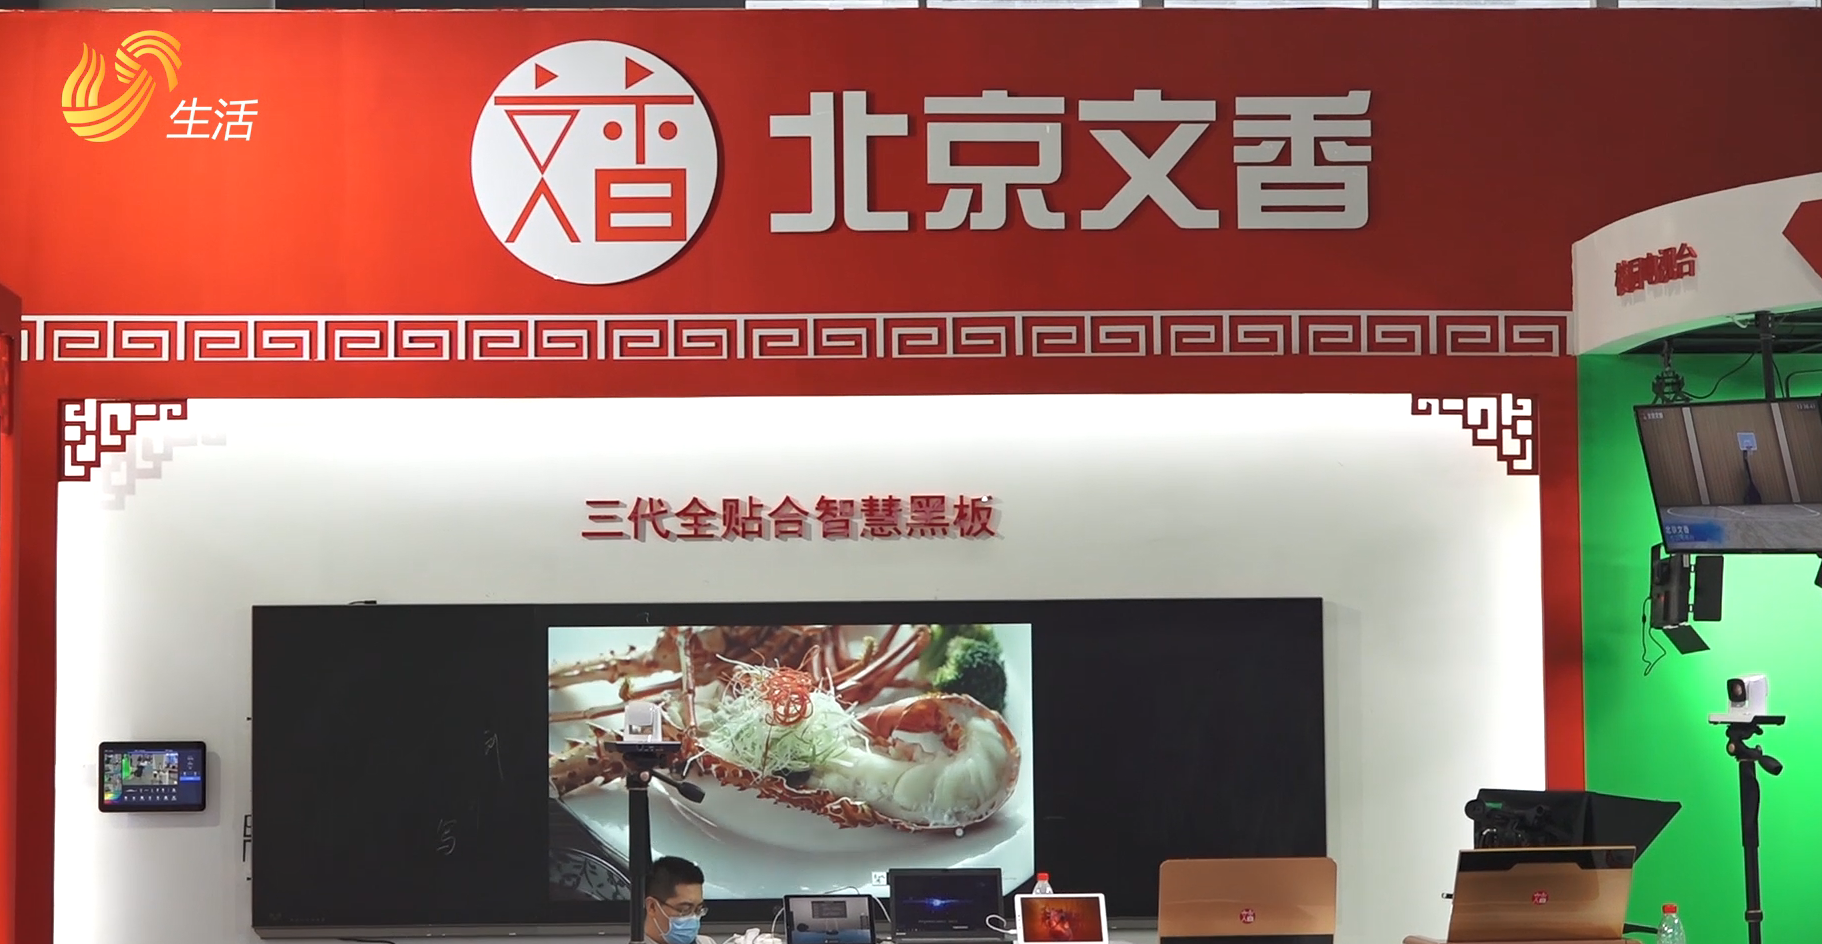 北京文香信息技术有限公司携亮点产品山东省教育装备博览会